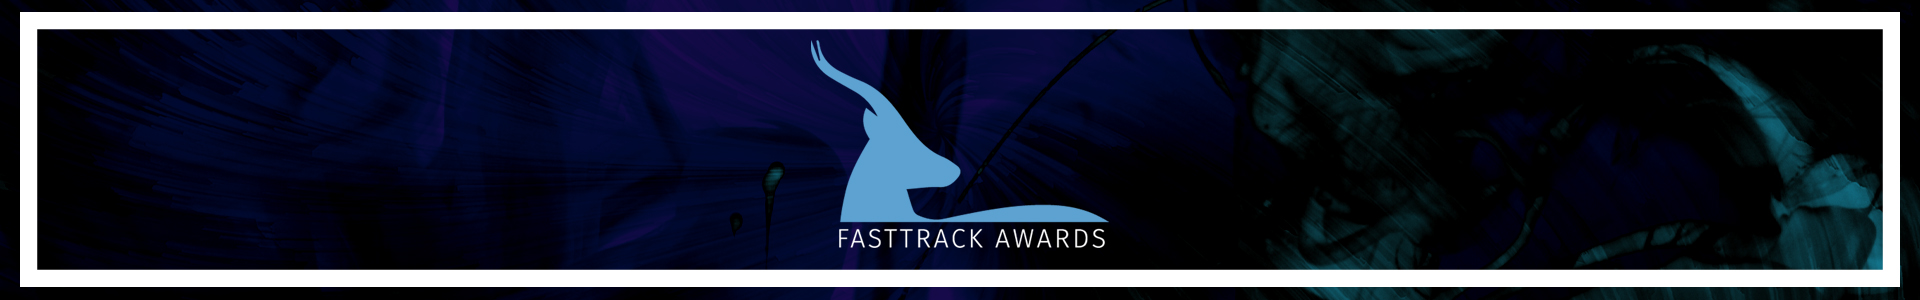 Fasttrack Awards - October 7, 2022